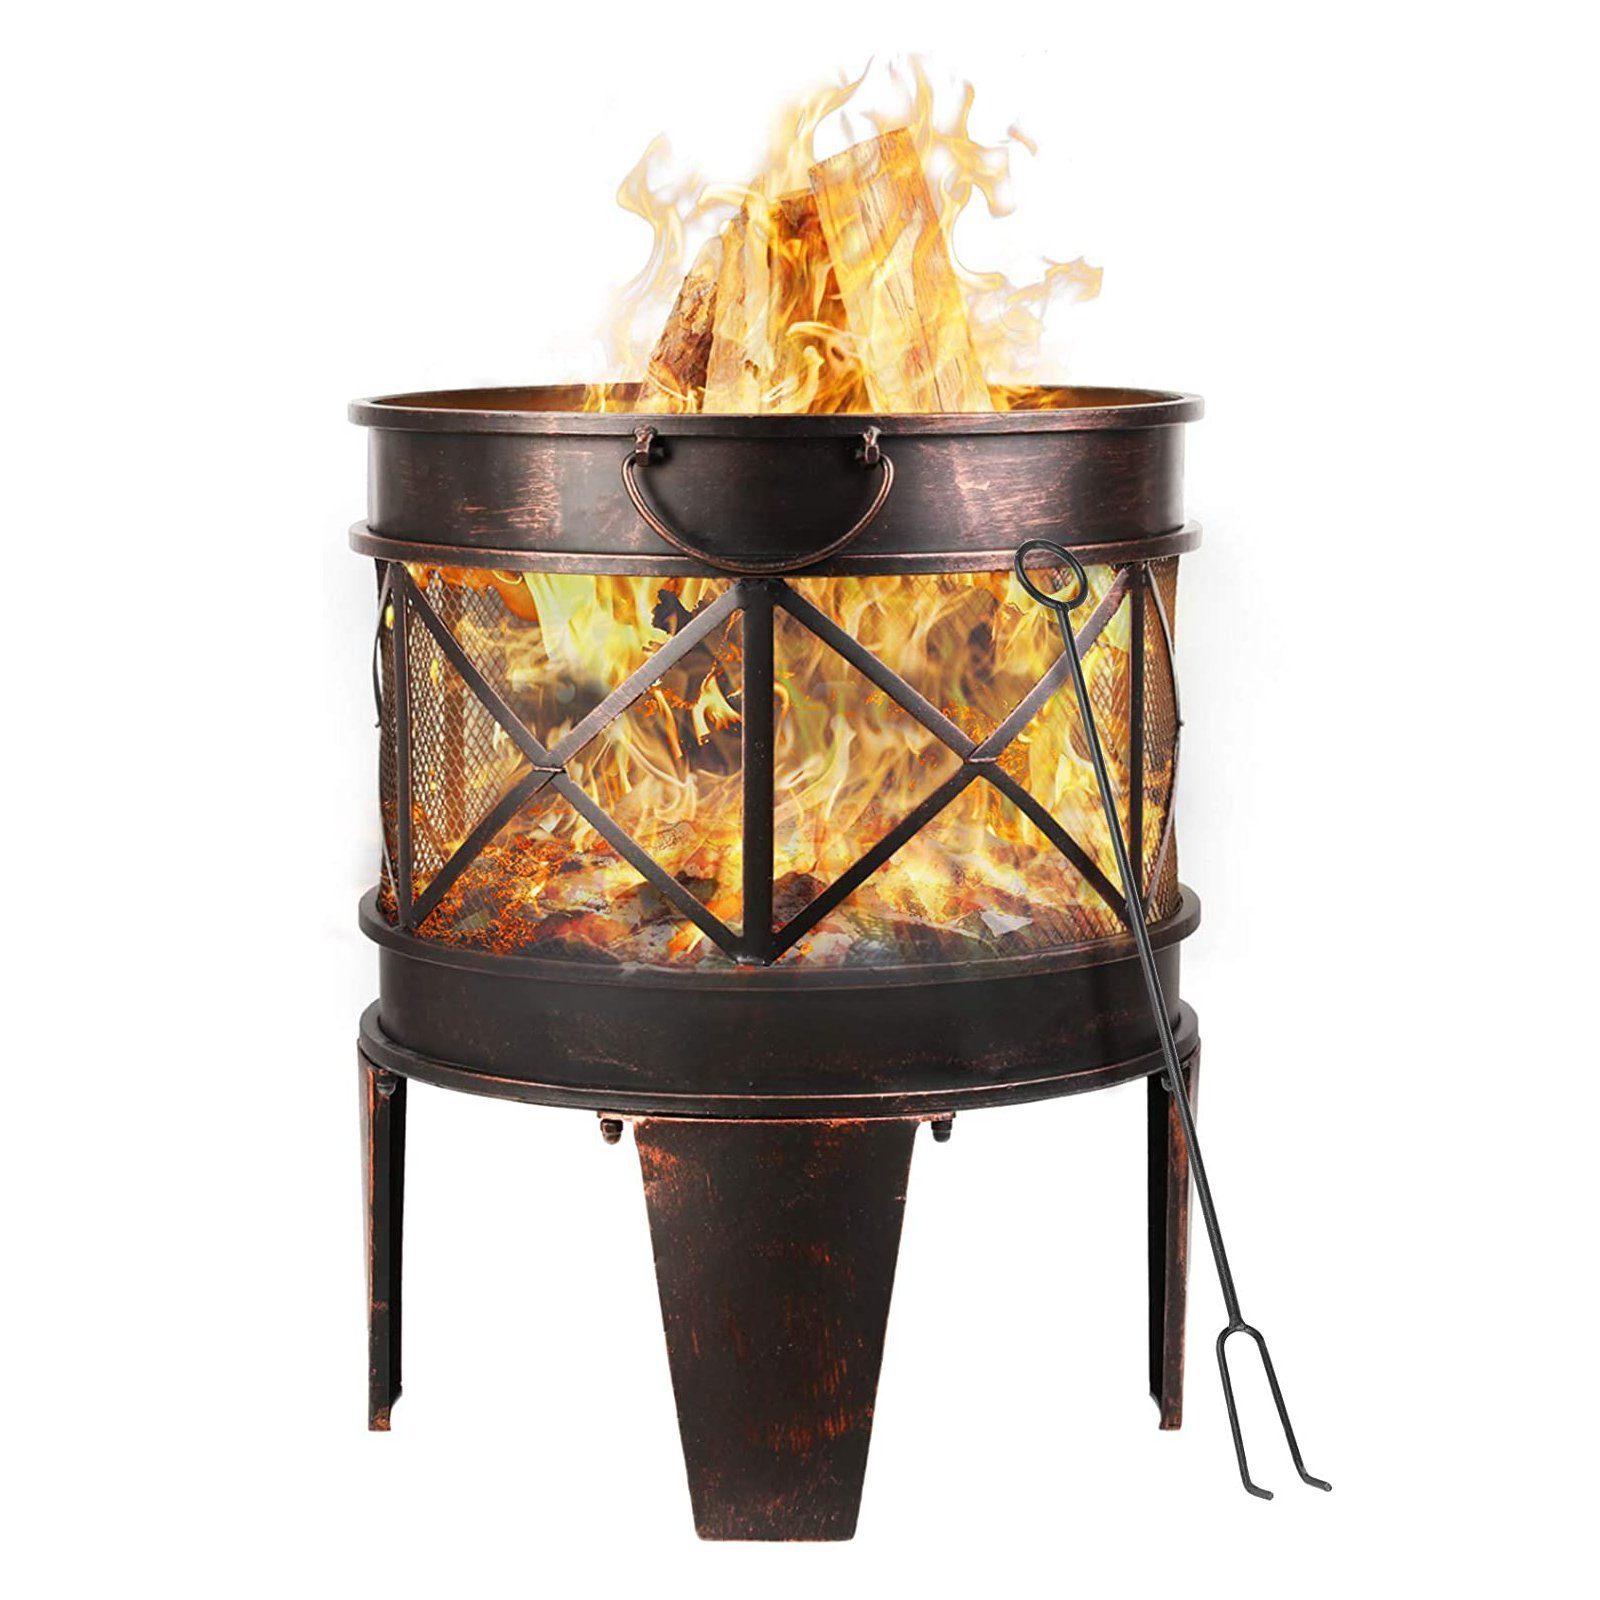 Femor Feuerschale, Feuerkorb 58x45x42cm, Metall Feuerstelle mit Griffen und  Schürhaken, Feuerschalen für den Garten, Feuerschale in Antik-Rost-Optik  online kaufen | OTTO